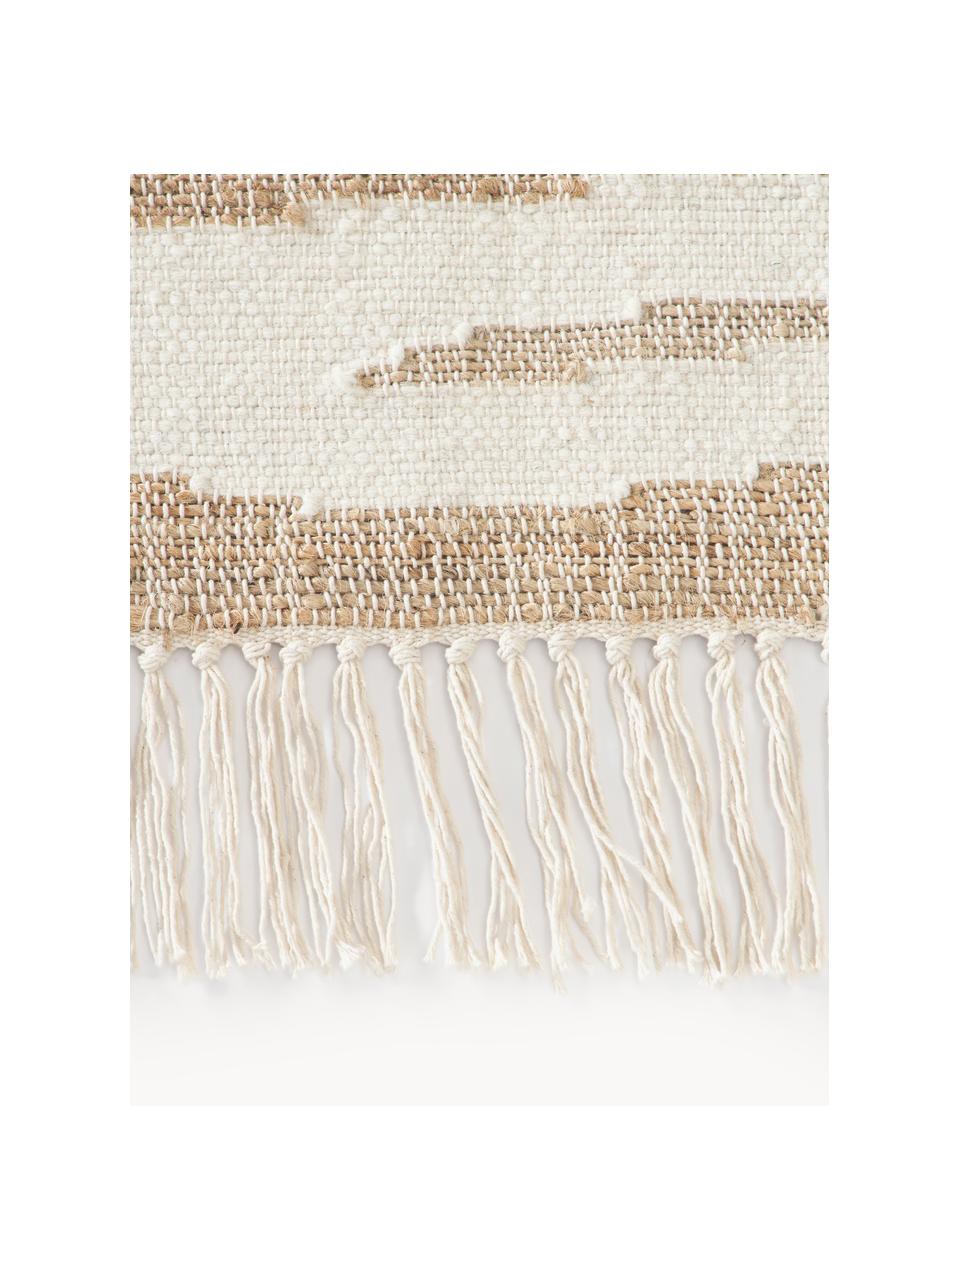 Kurzflor-Teppich Ari mit Fransen und Zebra-Muster, 55 % Jute, 25 % Baumwolle, 20 % Indian Wolle, Beige, Cremeweiss, B 120 x L 180 cm (Grösse S)